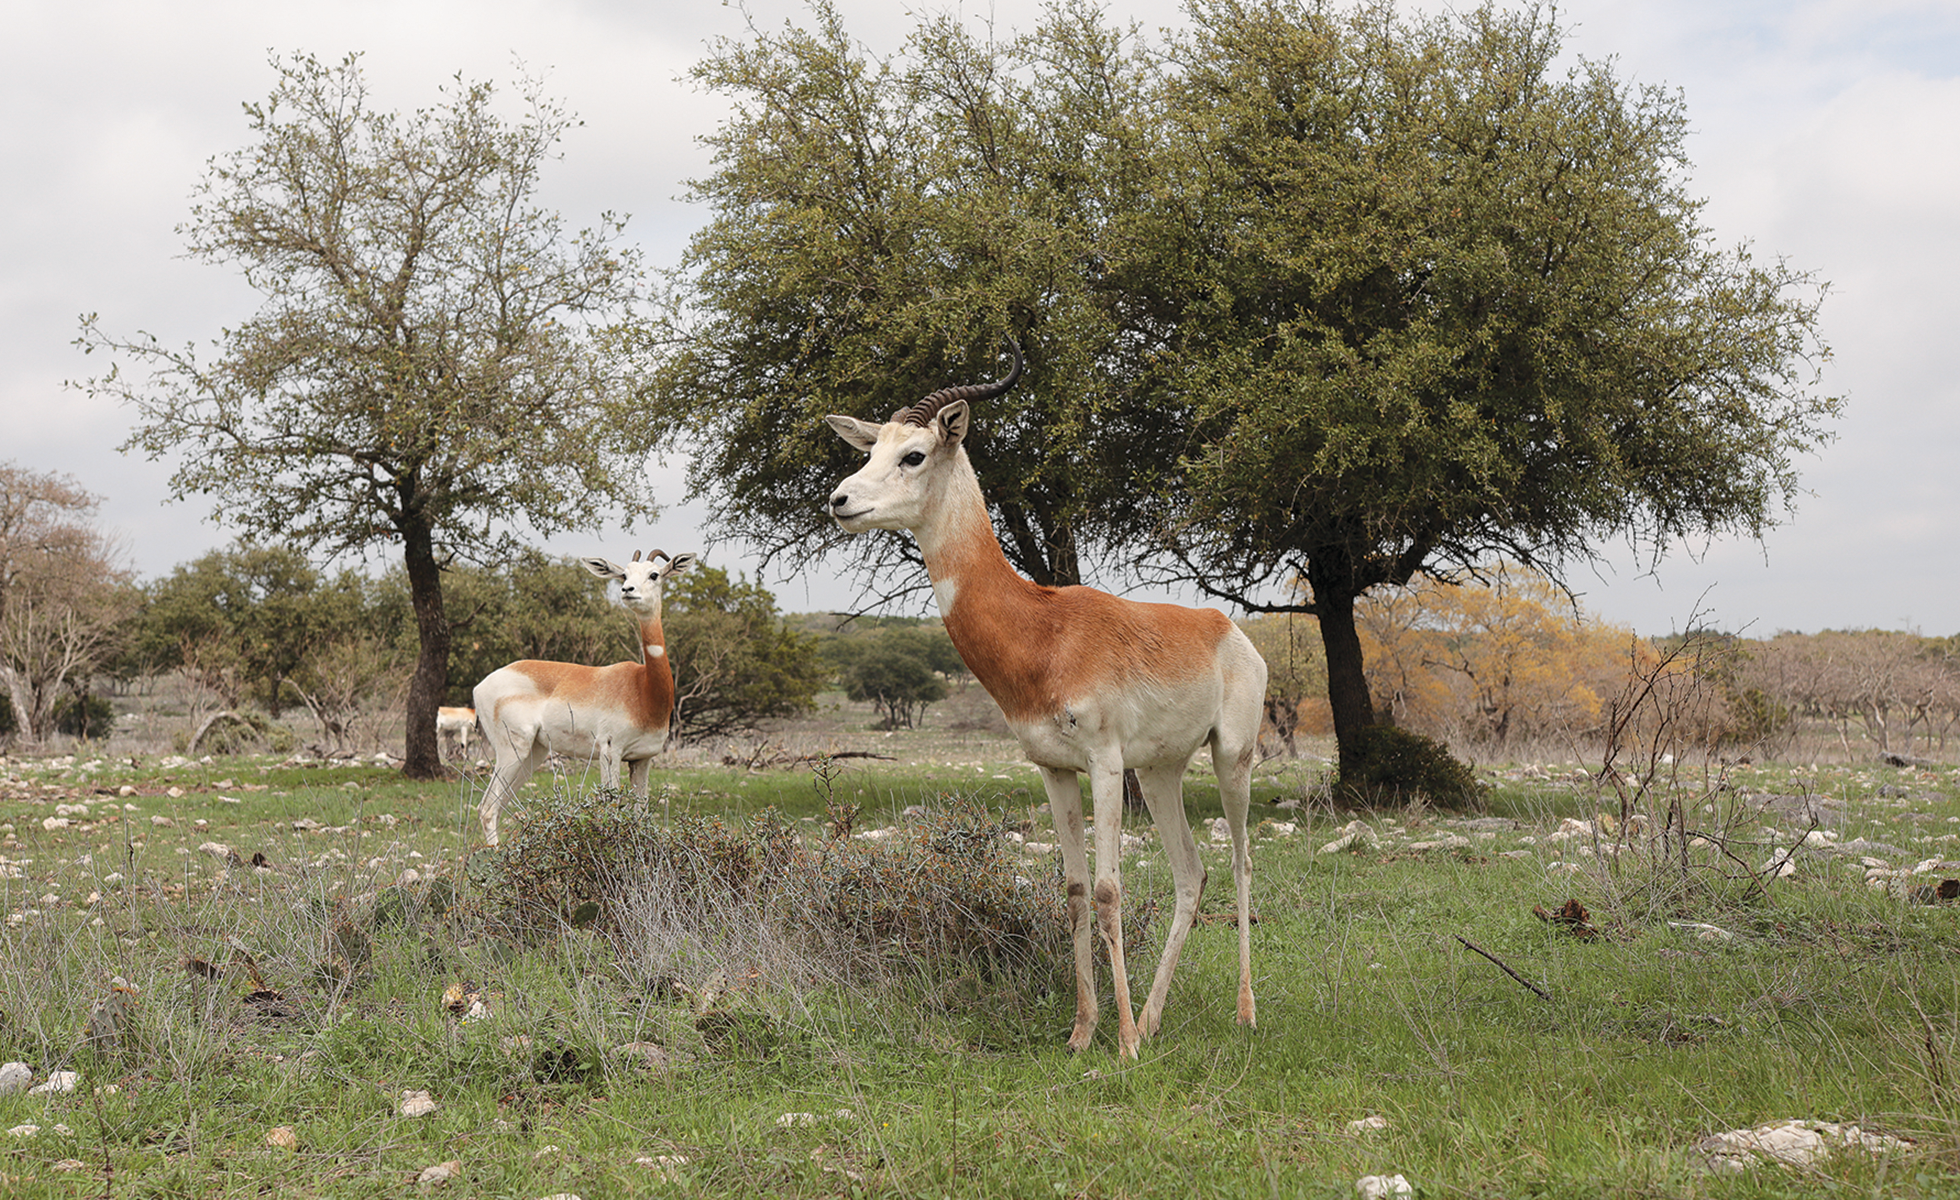 Llama and dama gazelle at the Y.O. Ranch Headquarters.